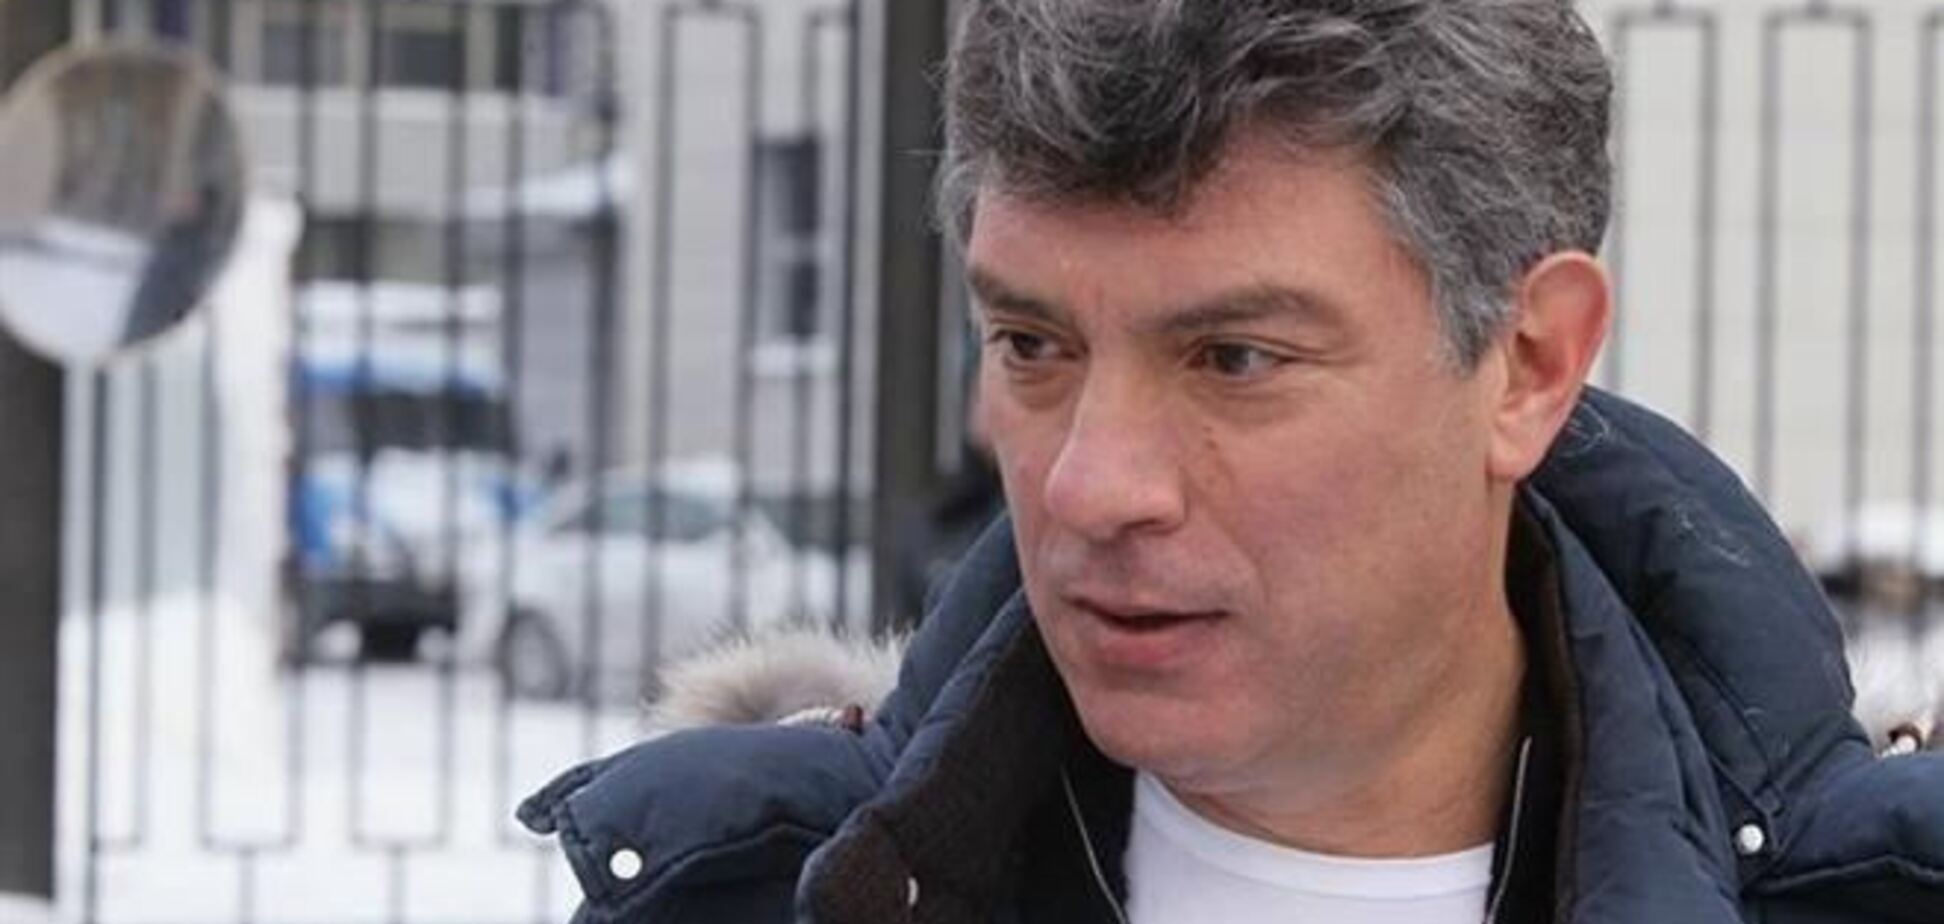 Немцов арестован на 10 суток за общение с соратником и жестикуляцию